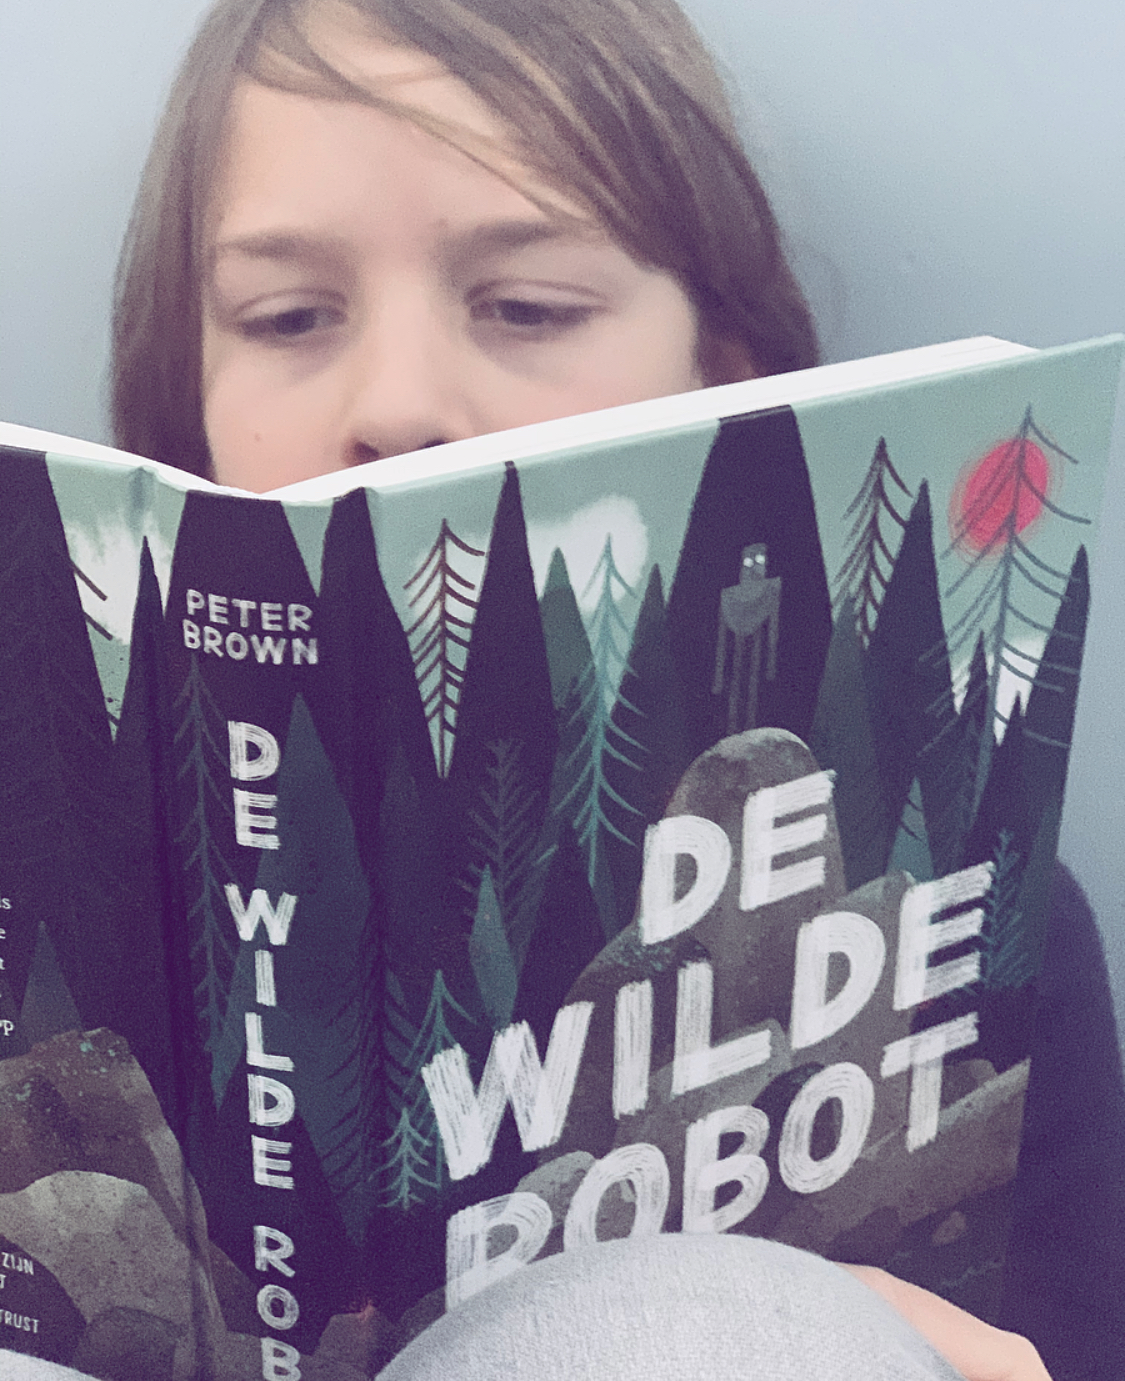 De wilde robot | boekwijzer